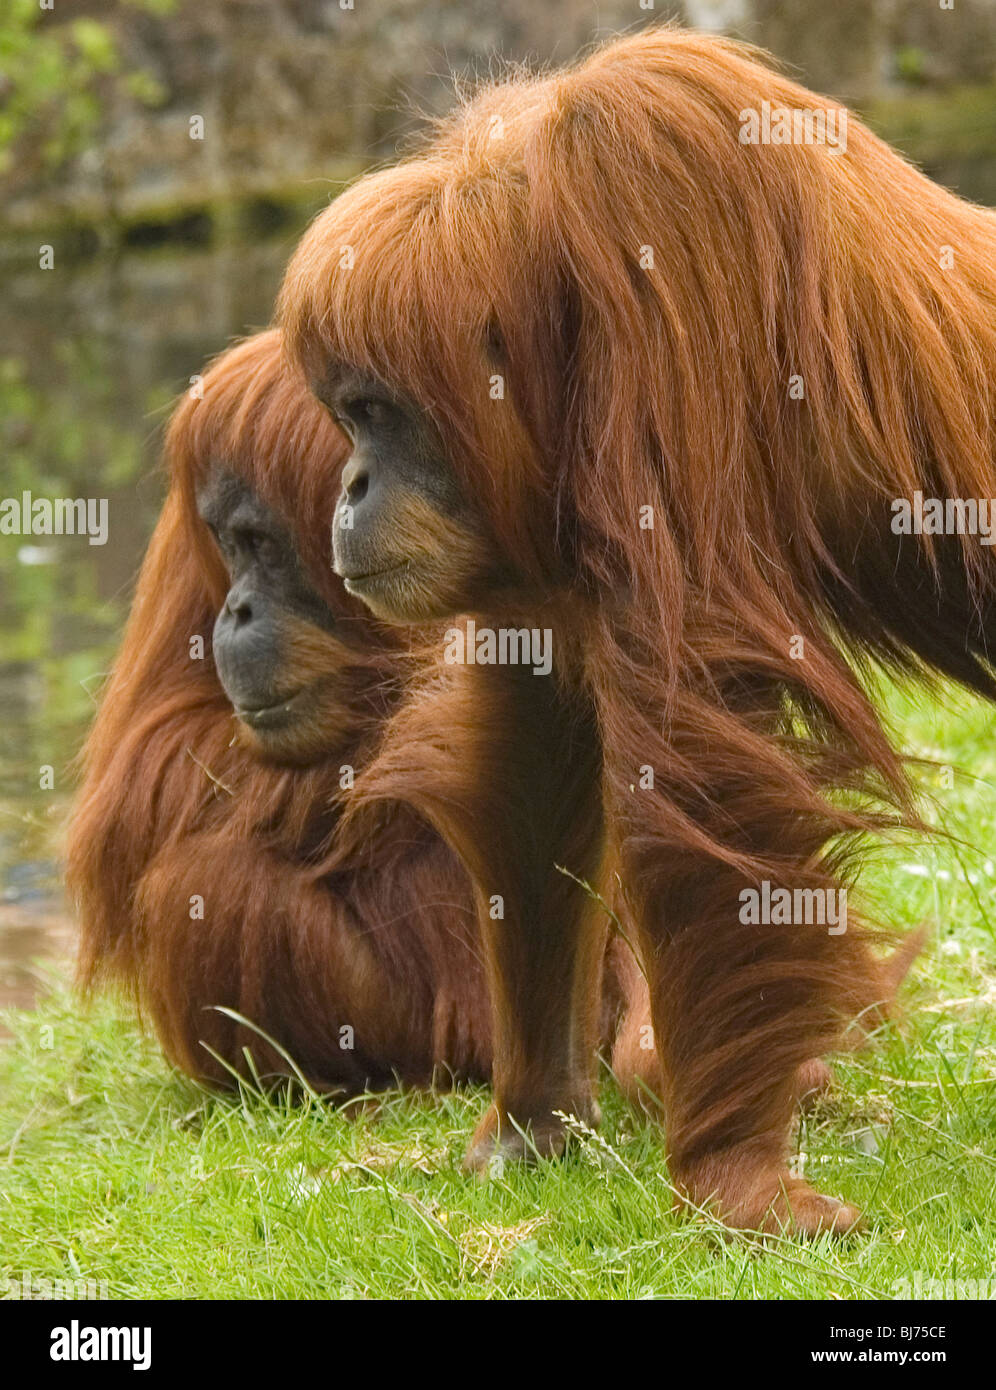 Two Orangutans in profile Stock Photo